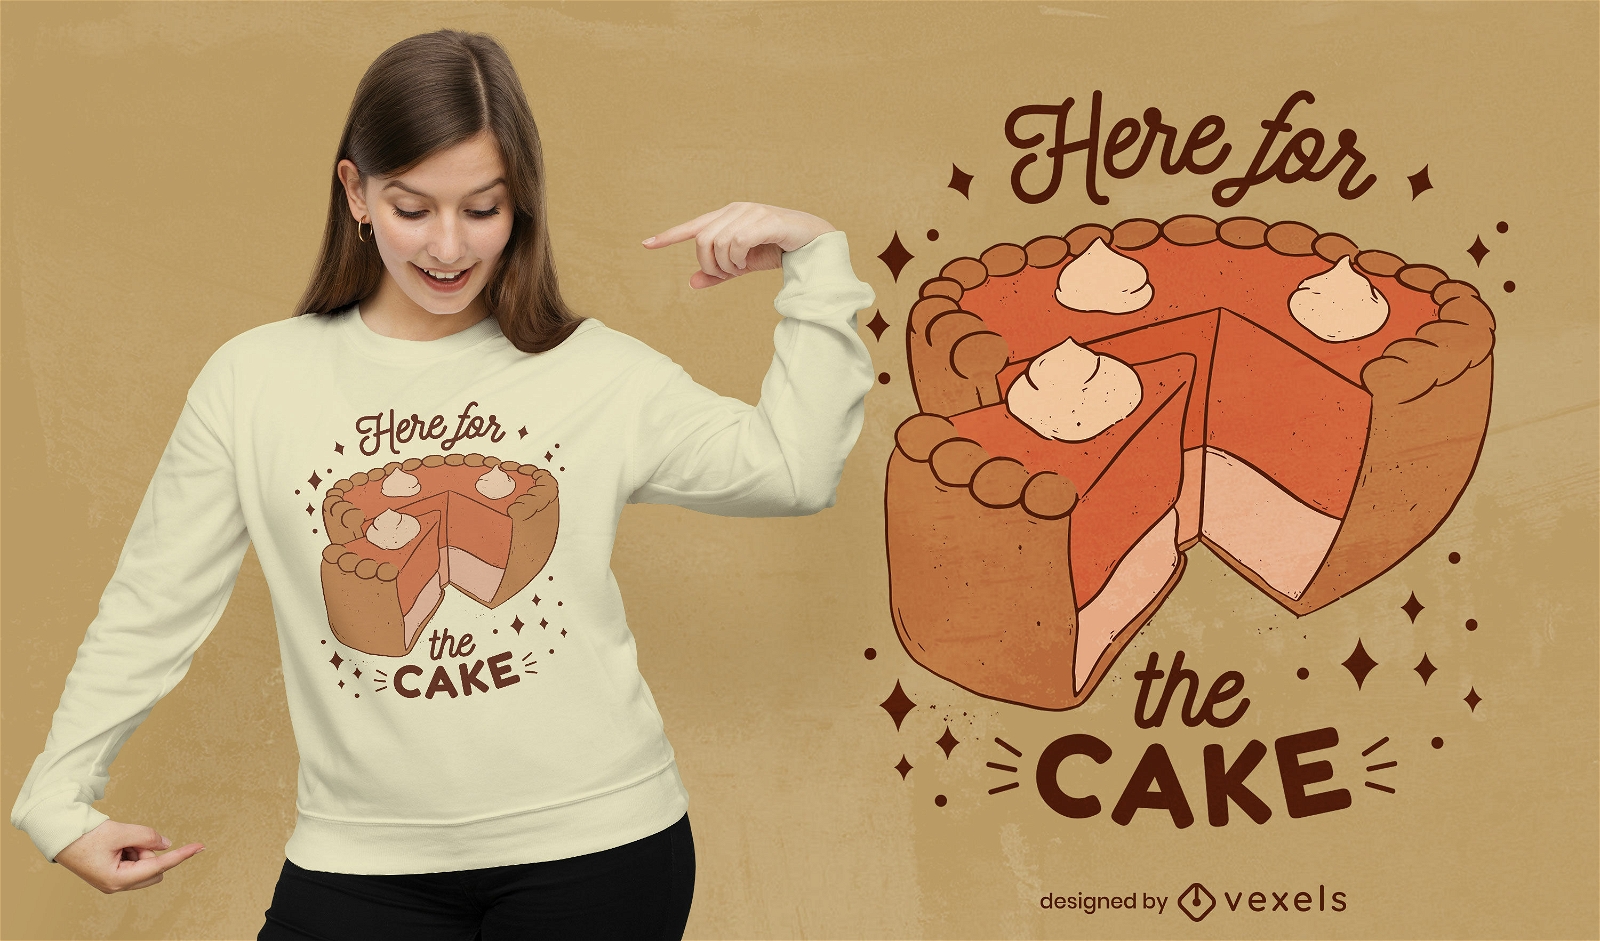 Cake quote t-shirt design